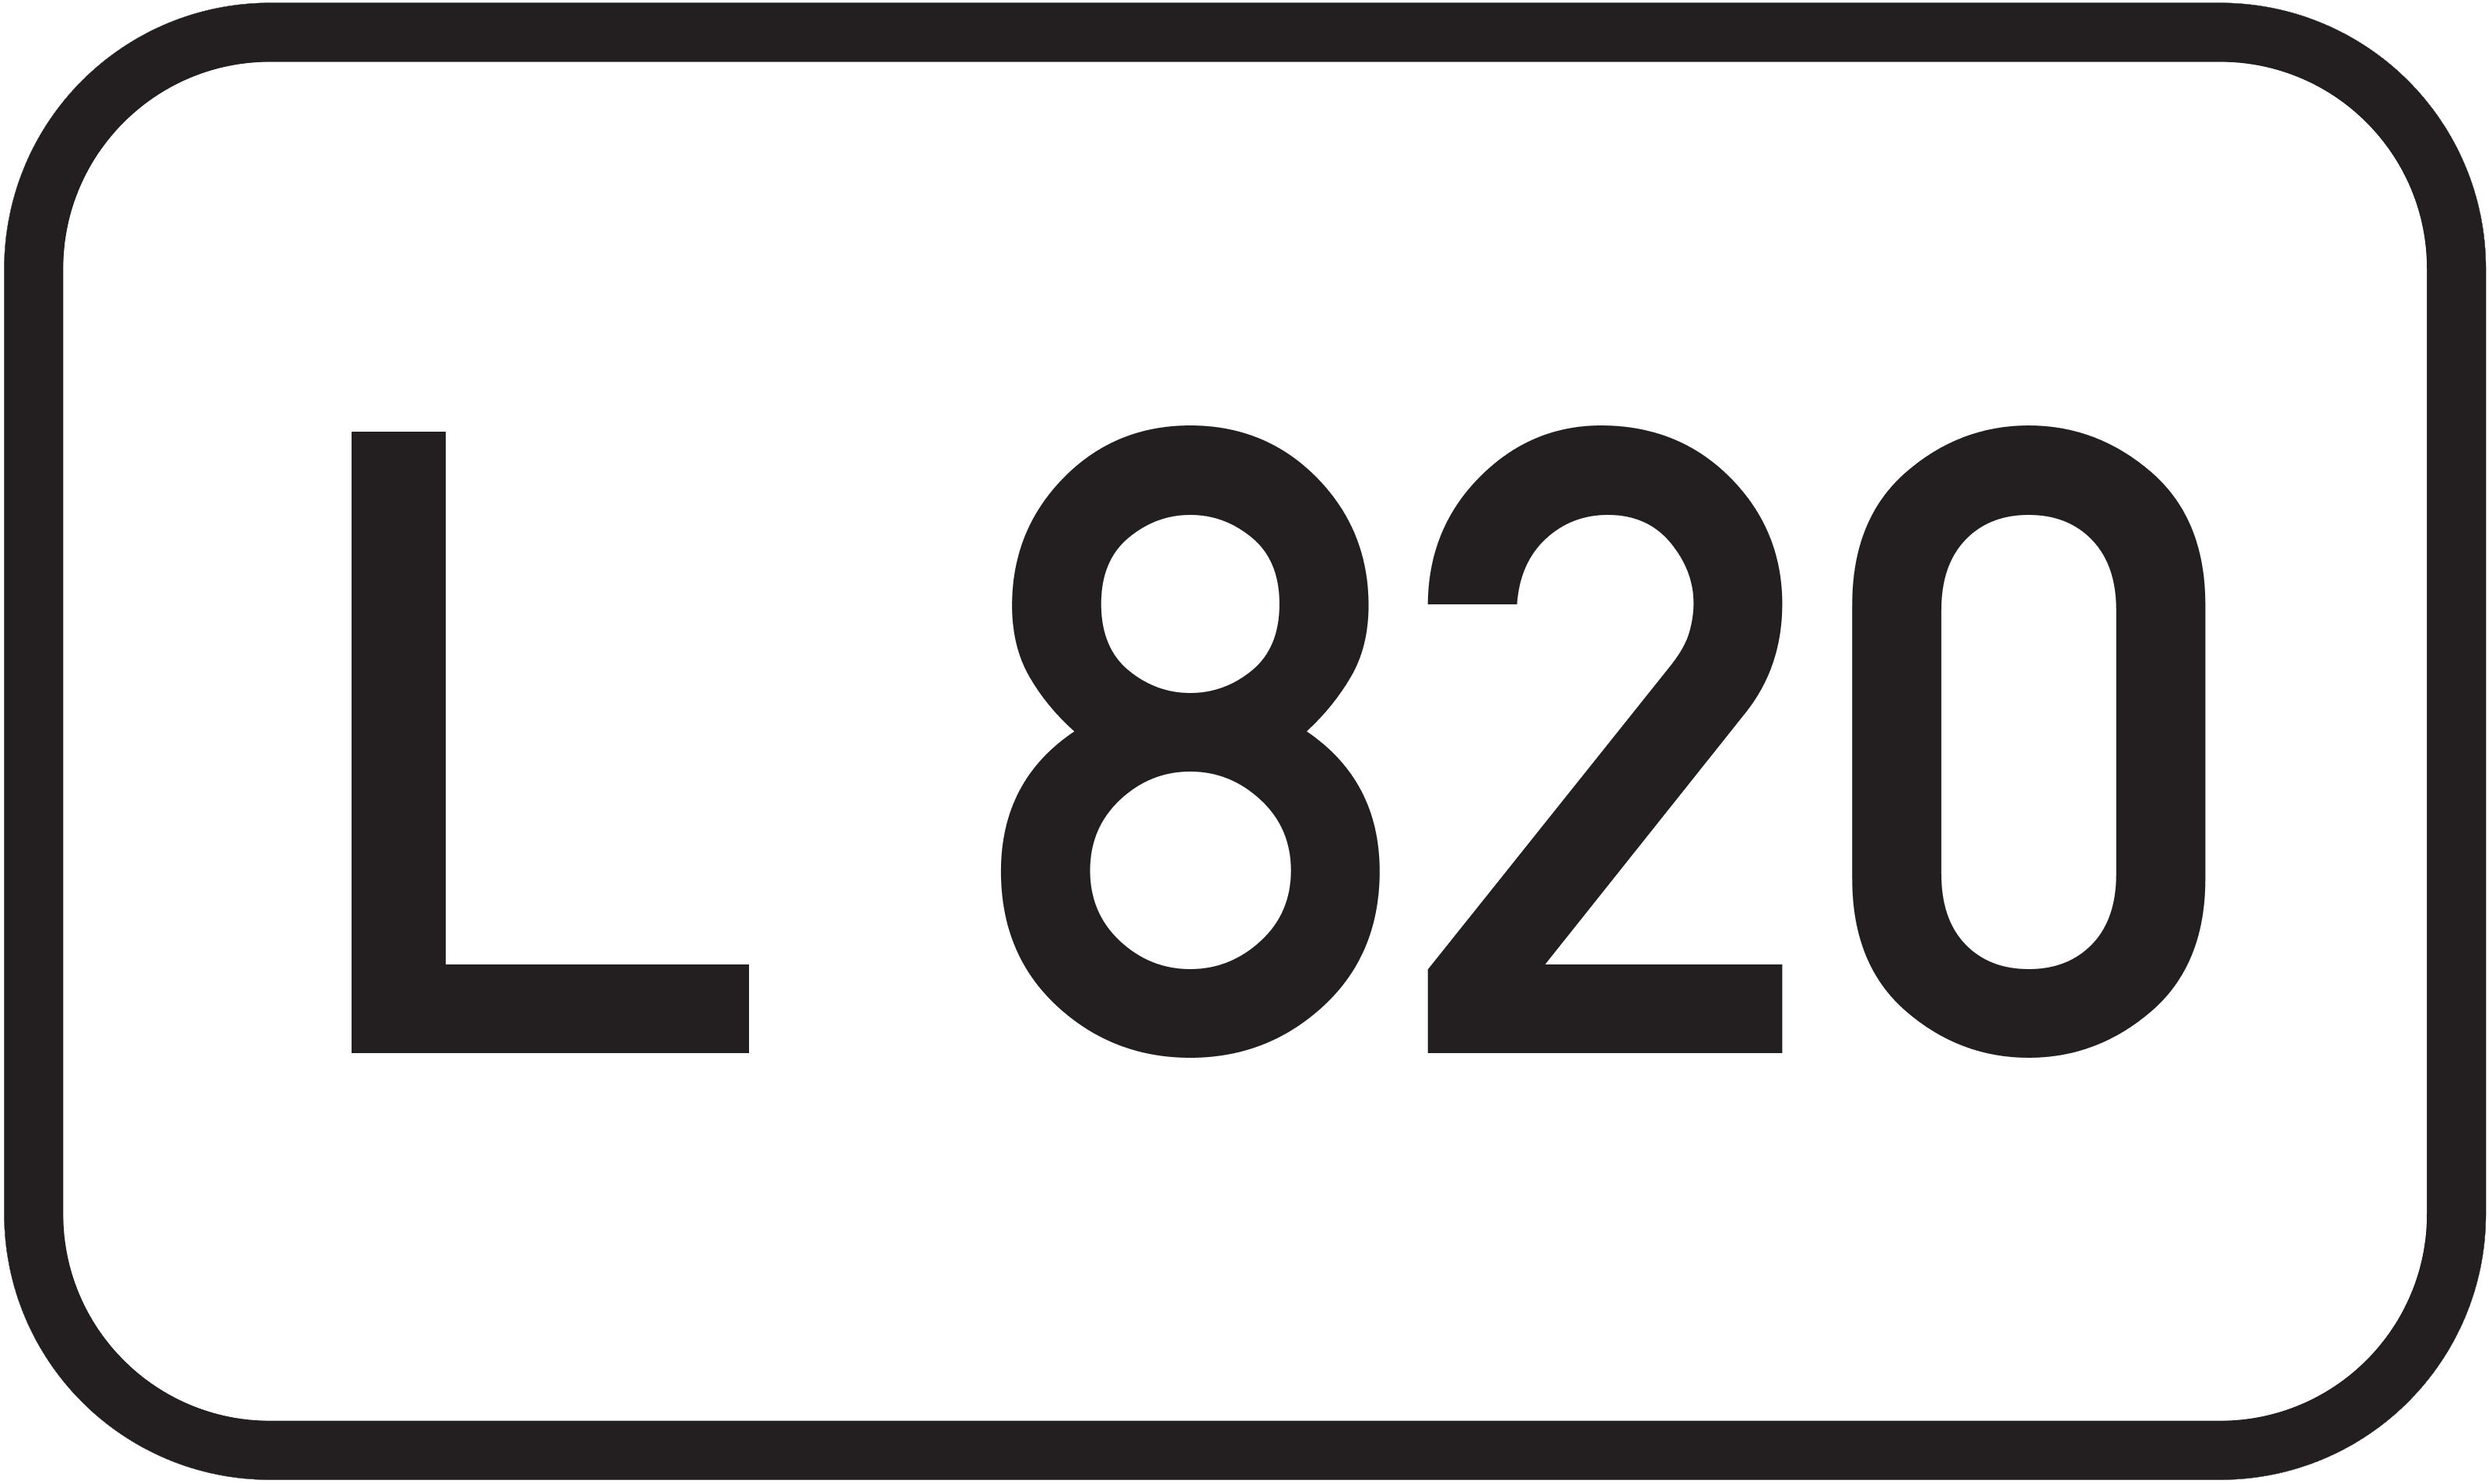 Landesstraße L 820